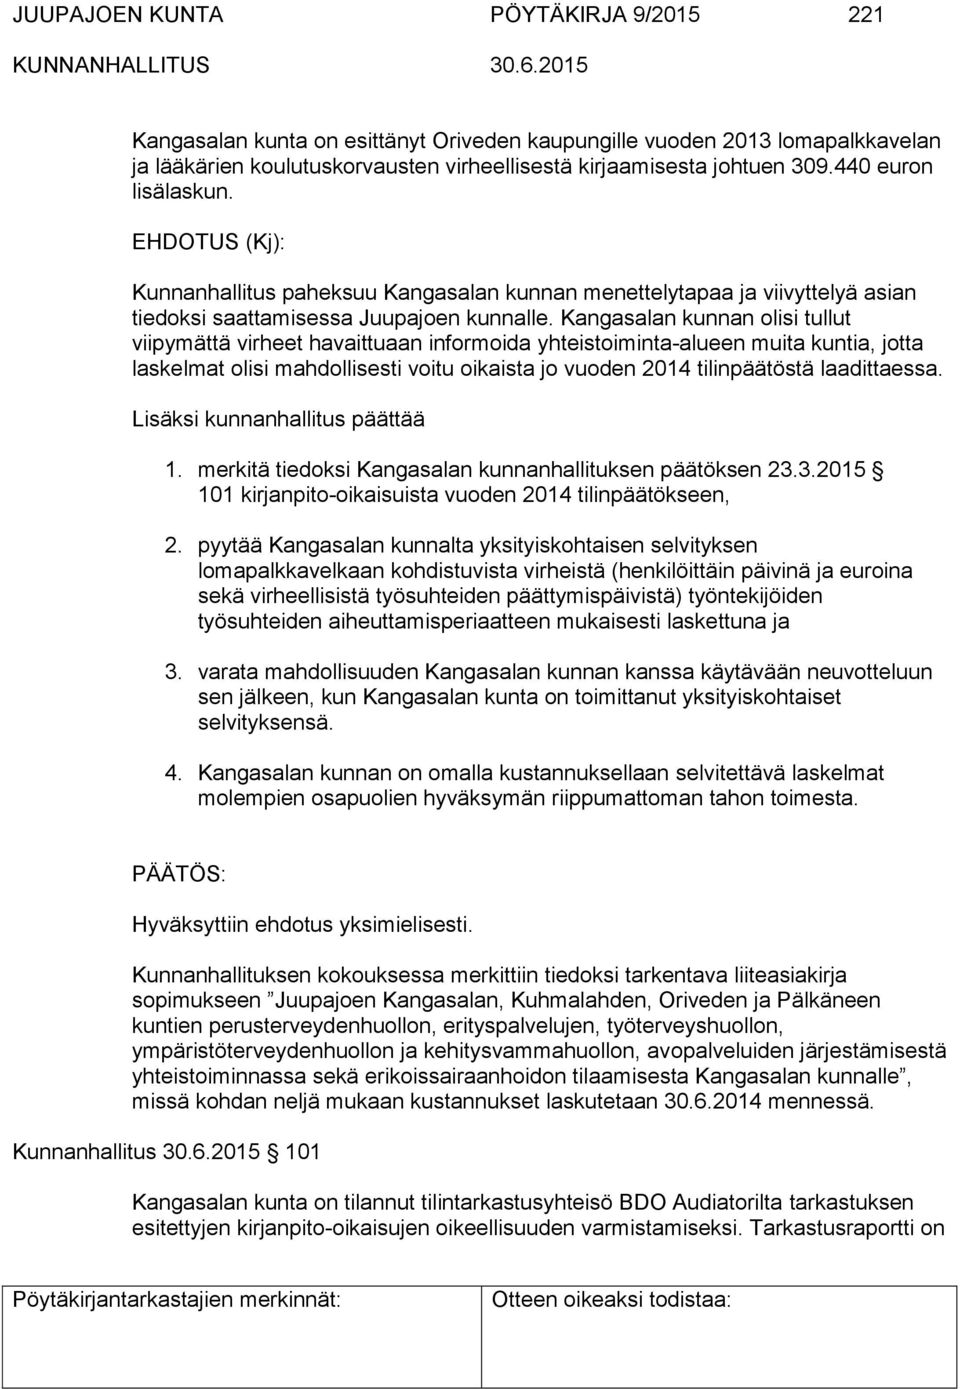 Kangasalan kunnan olisi tullut viipymättä virheet havaittuaan informoida yhteistoiminta-alueen muita kuntia, jotta laskelmat olisi mahdollisesti voitu oikaista jo vuoden 2014 tilinpäätöstä